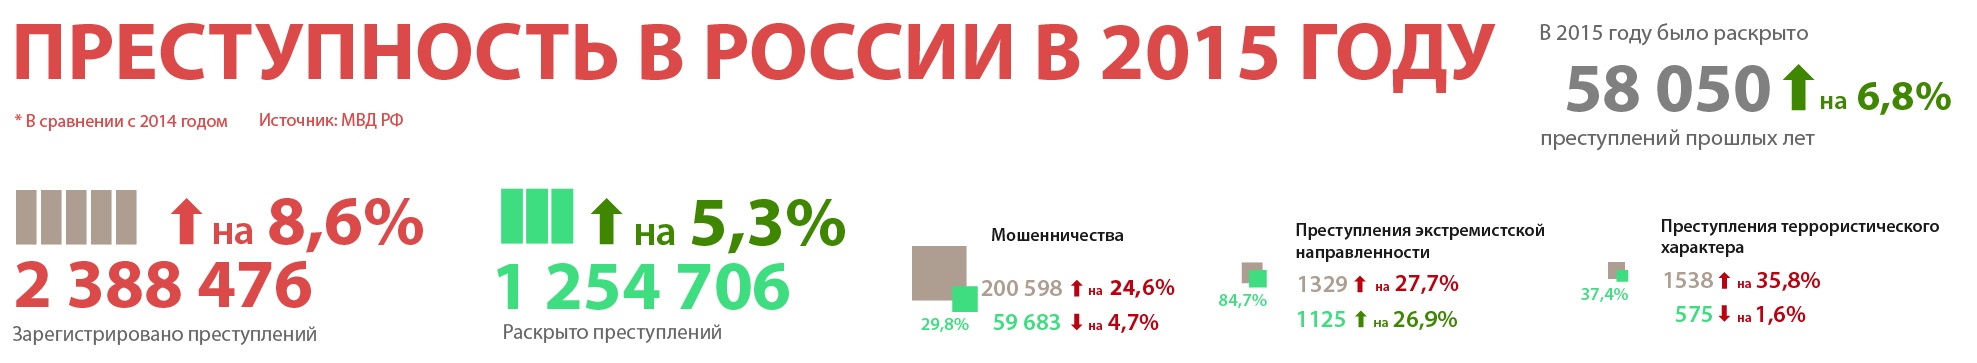 Преступность в России 2015